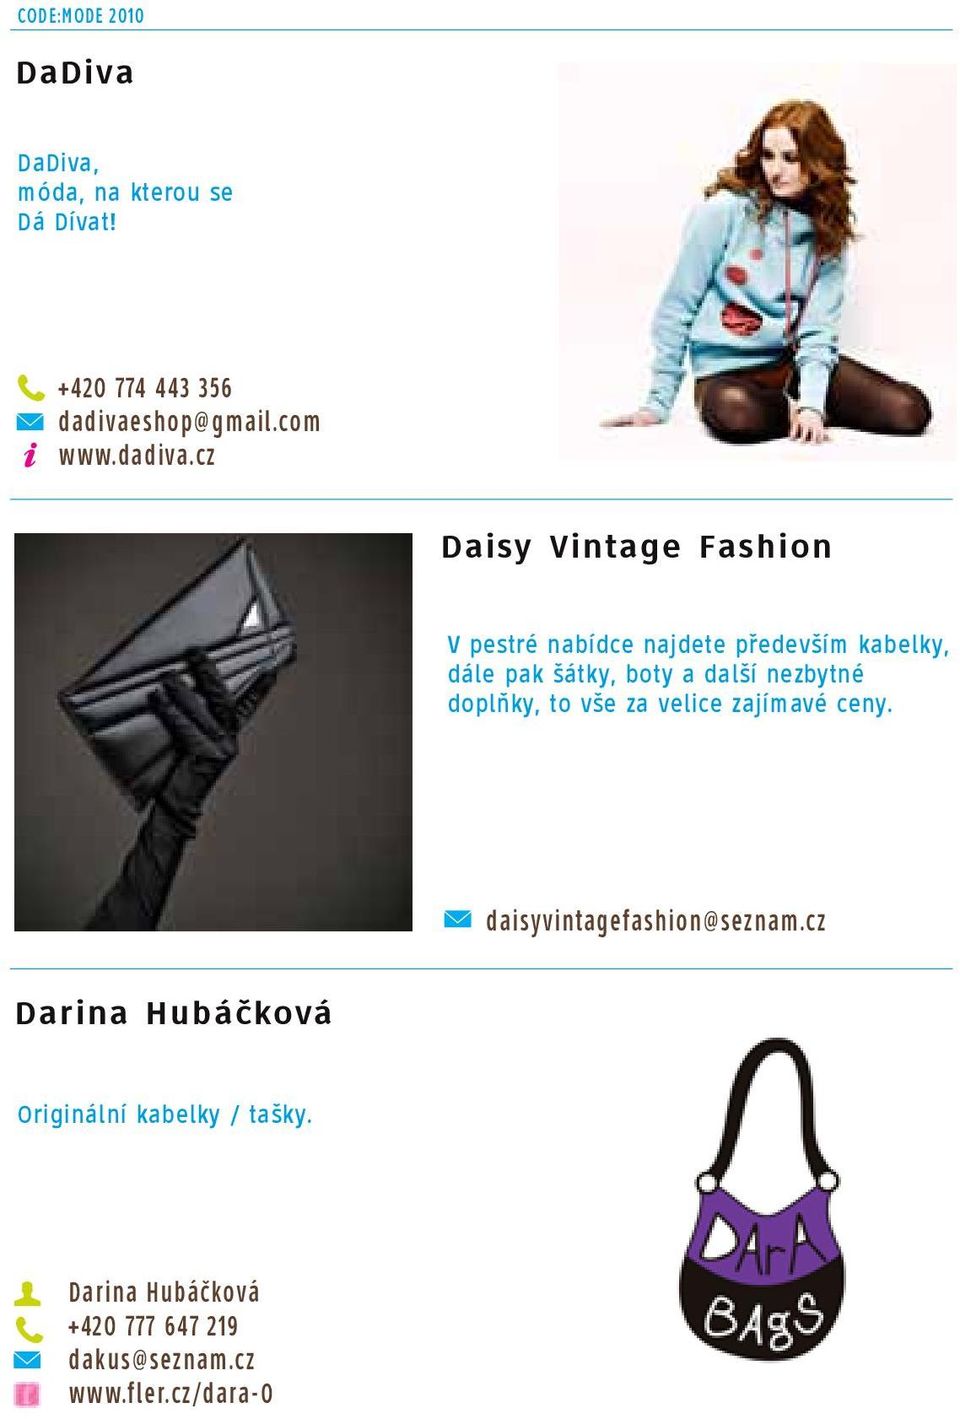 cz Daisy Vintage Fashion V pestré nabídce najdete především kabelky, dále pak šátky, boty a